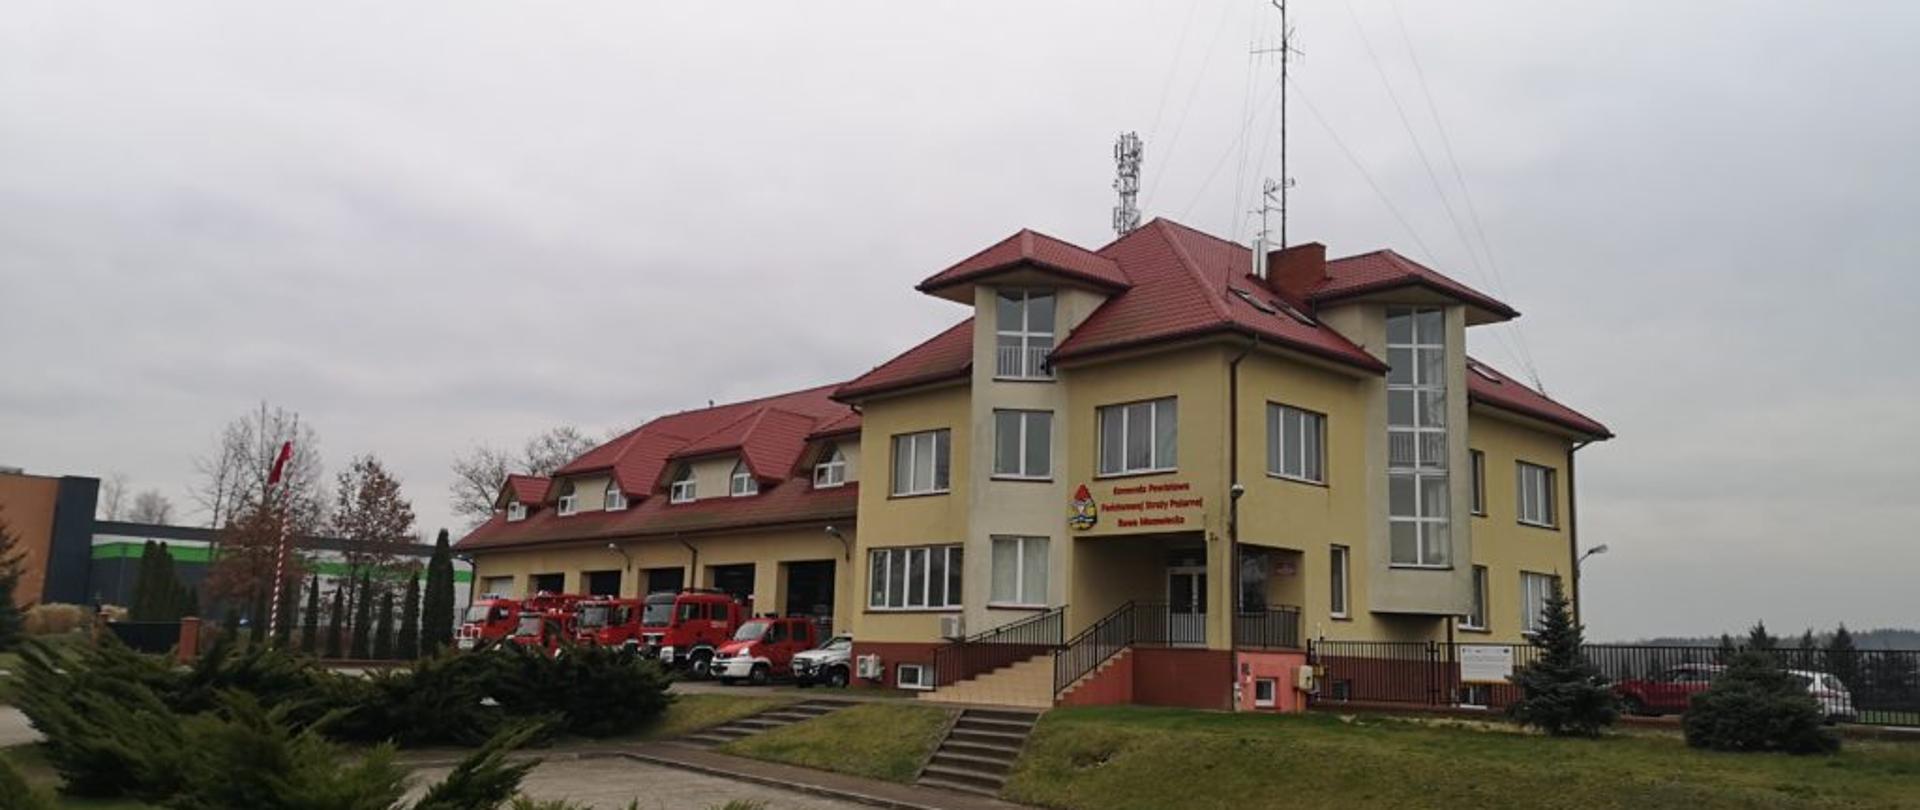 Zdjęcie przedstawia budynek Komendy Powiatowej Państwowej Straży Pożarnej w Rawie Mazowieckiej. Budynek znajduje się wyżej poziomu ulicy i parkingu dla interesantów. Budynek składa się z dwóch połączonych ze sobą części. Pierwsza, od lewej strony to część garażowa (parter + piętro), a druga to część administracyjna (piwnica + 3 piętra) Zdjęcie zrobione frontu. Budynek jest koloru żółtego i ma czerwoną dachówkę. Przed częścią garażową są wystawione samochody strażackie. 